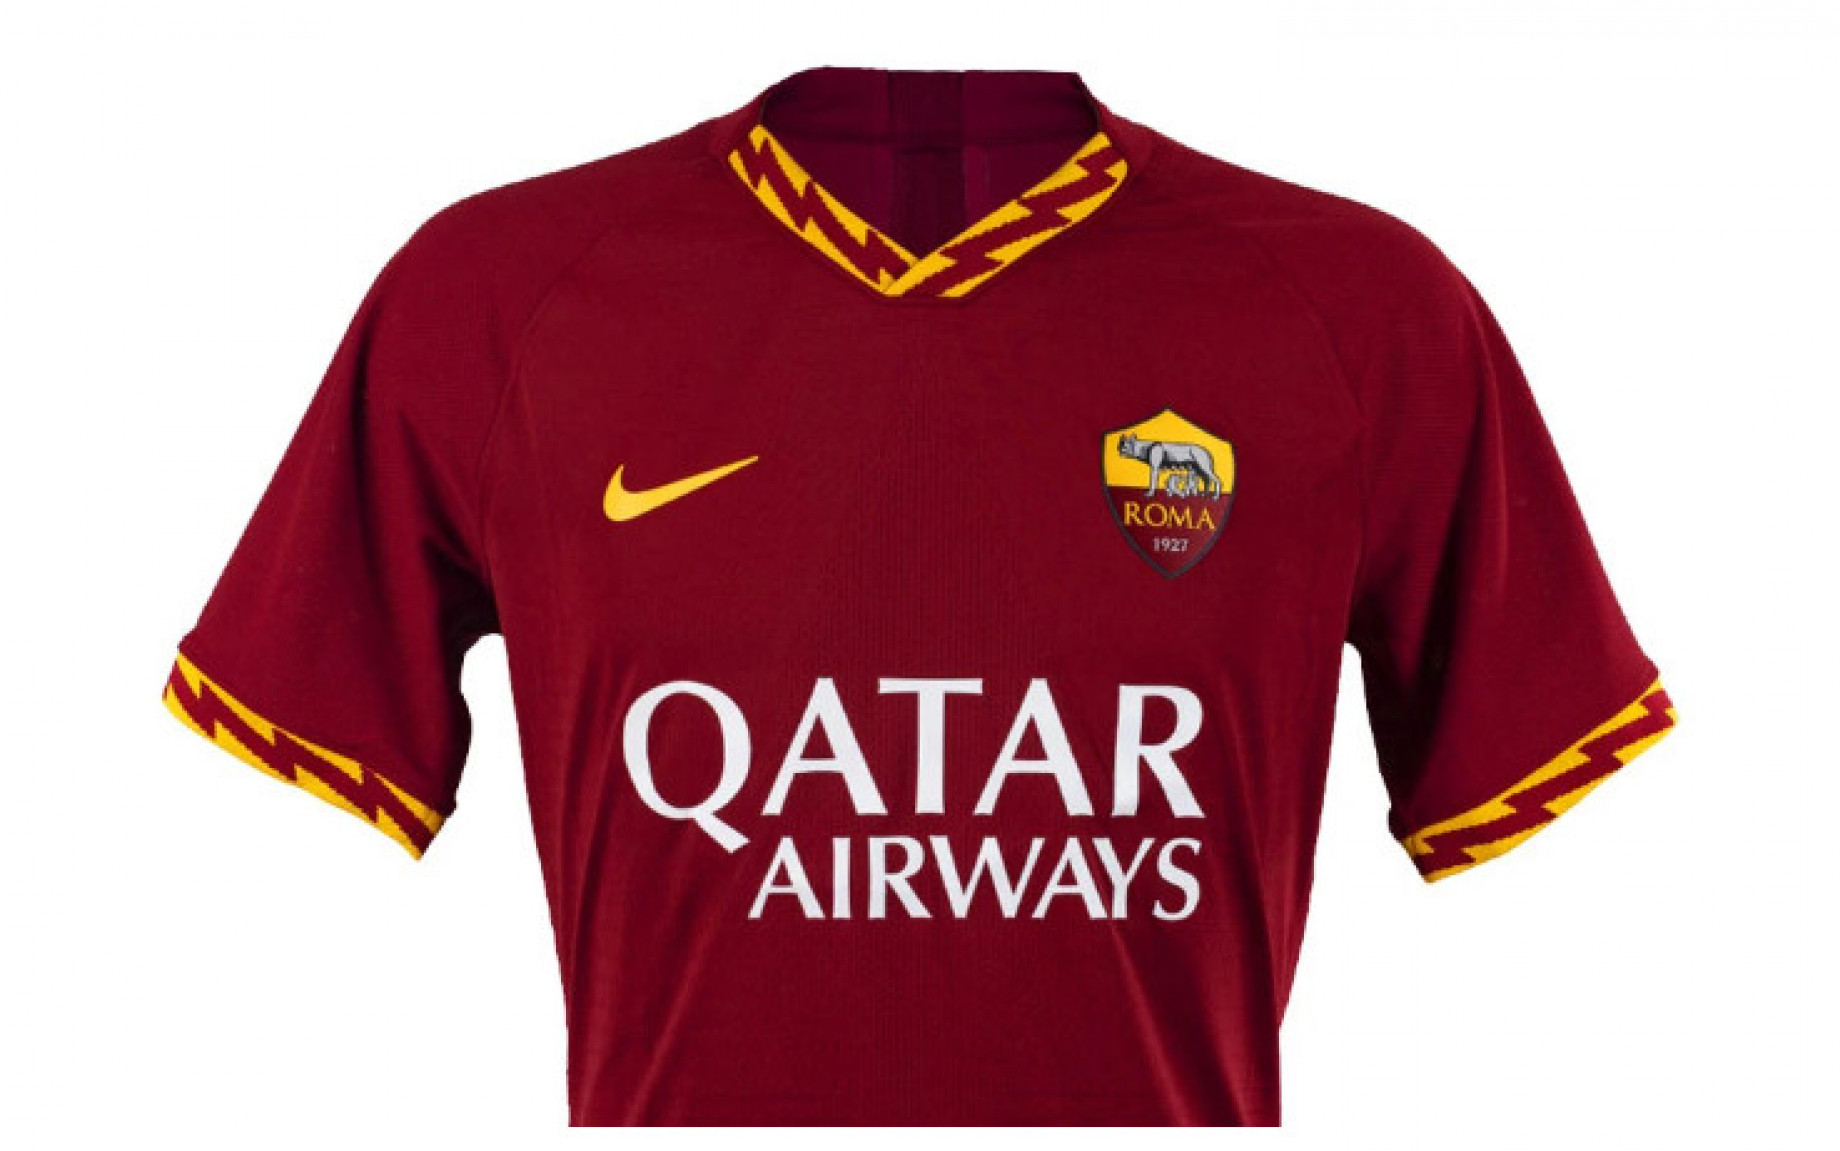 Roma maglia Nike GDM.jpg